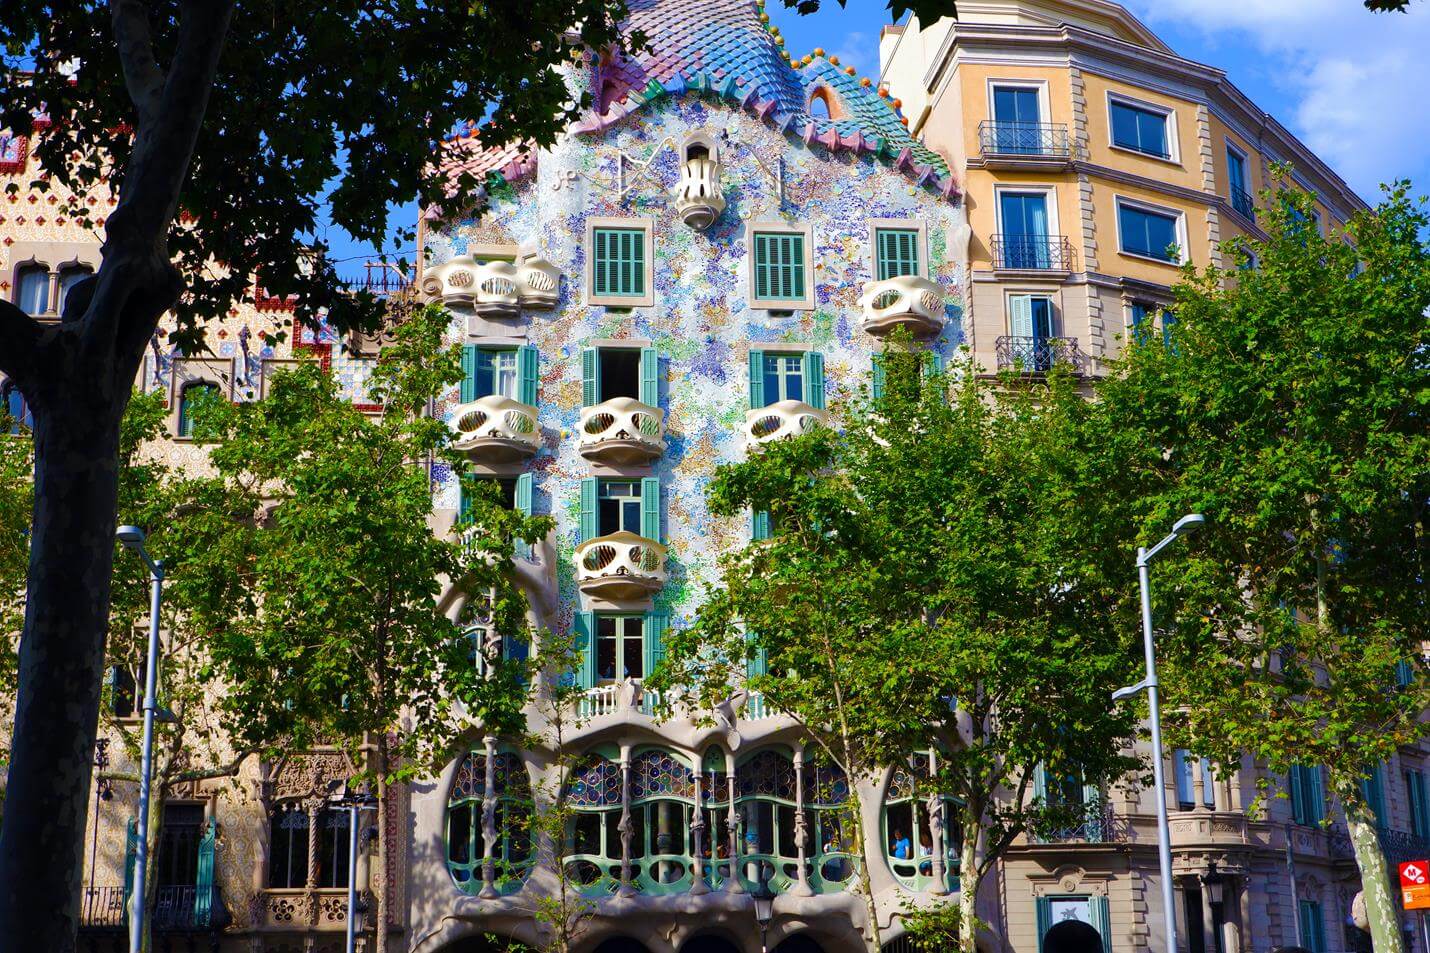 Casa Batlló in Barcelona - Top